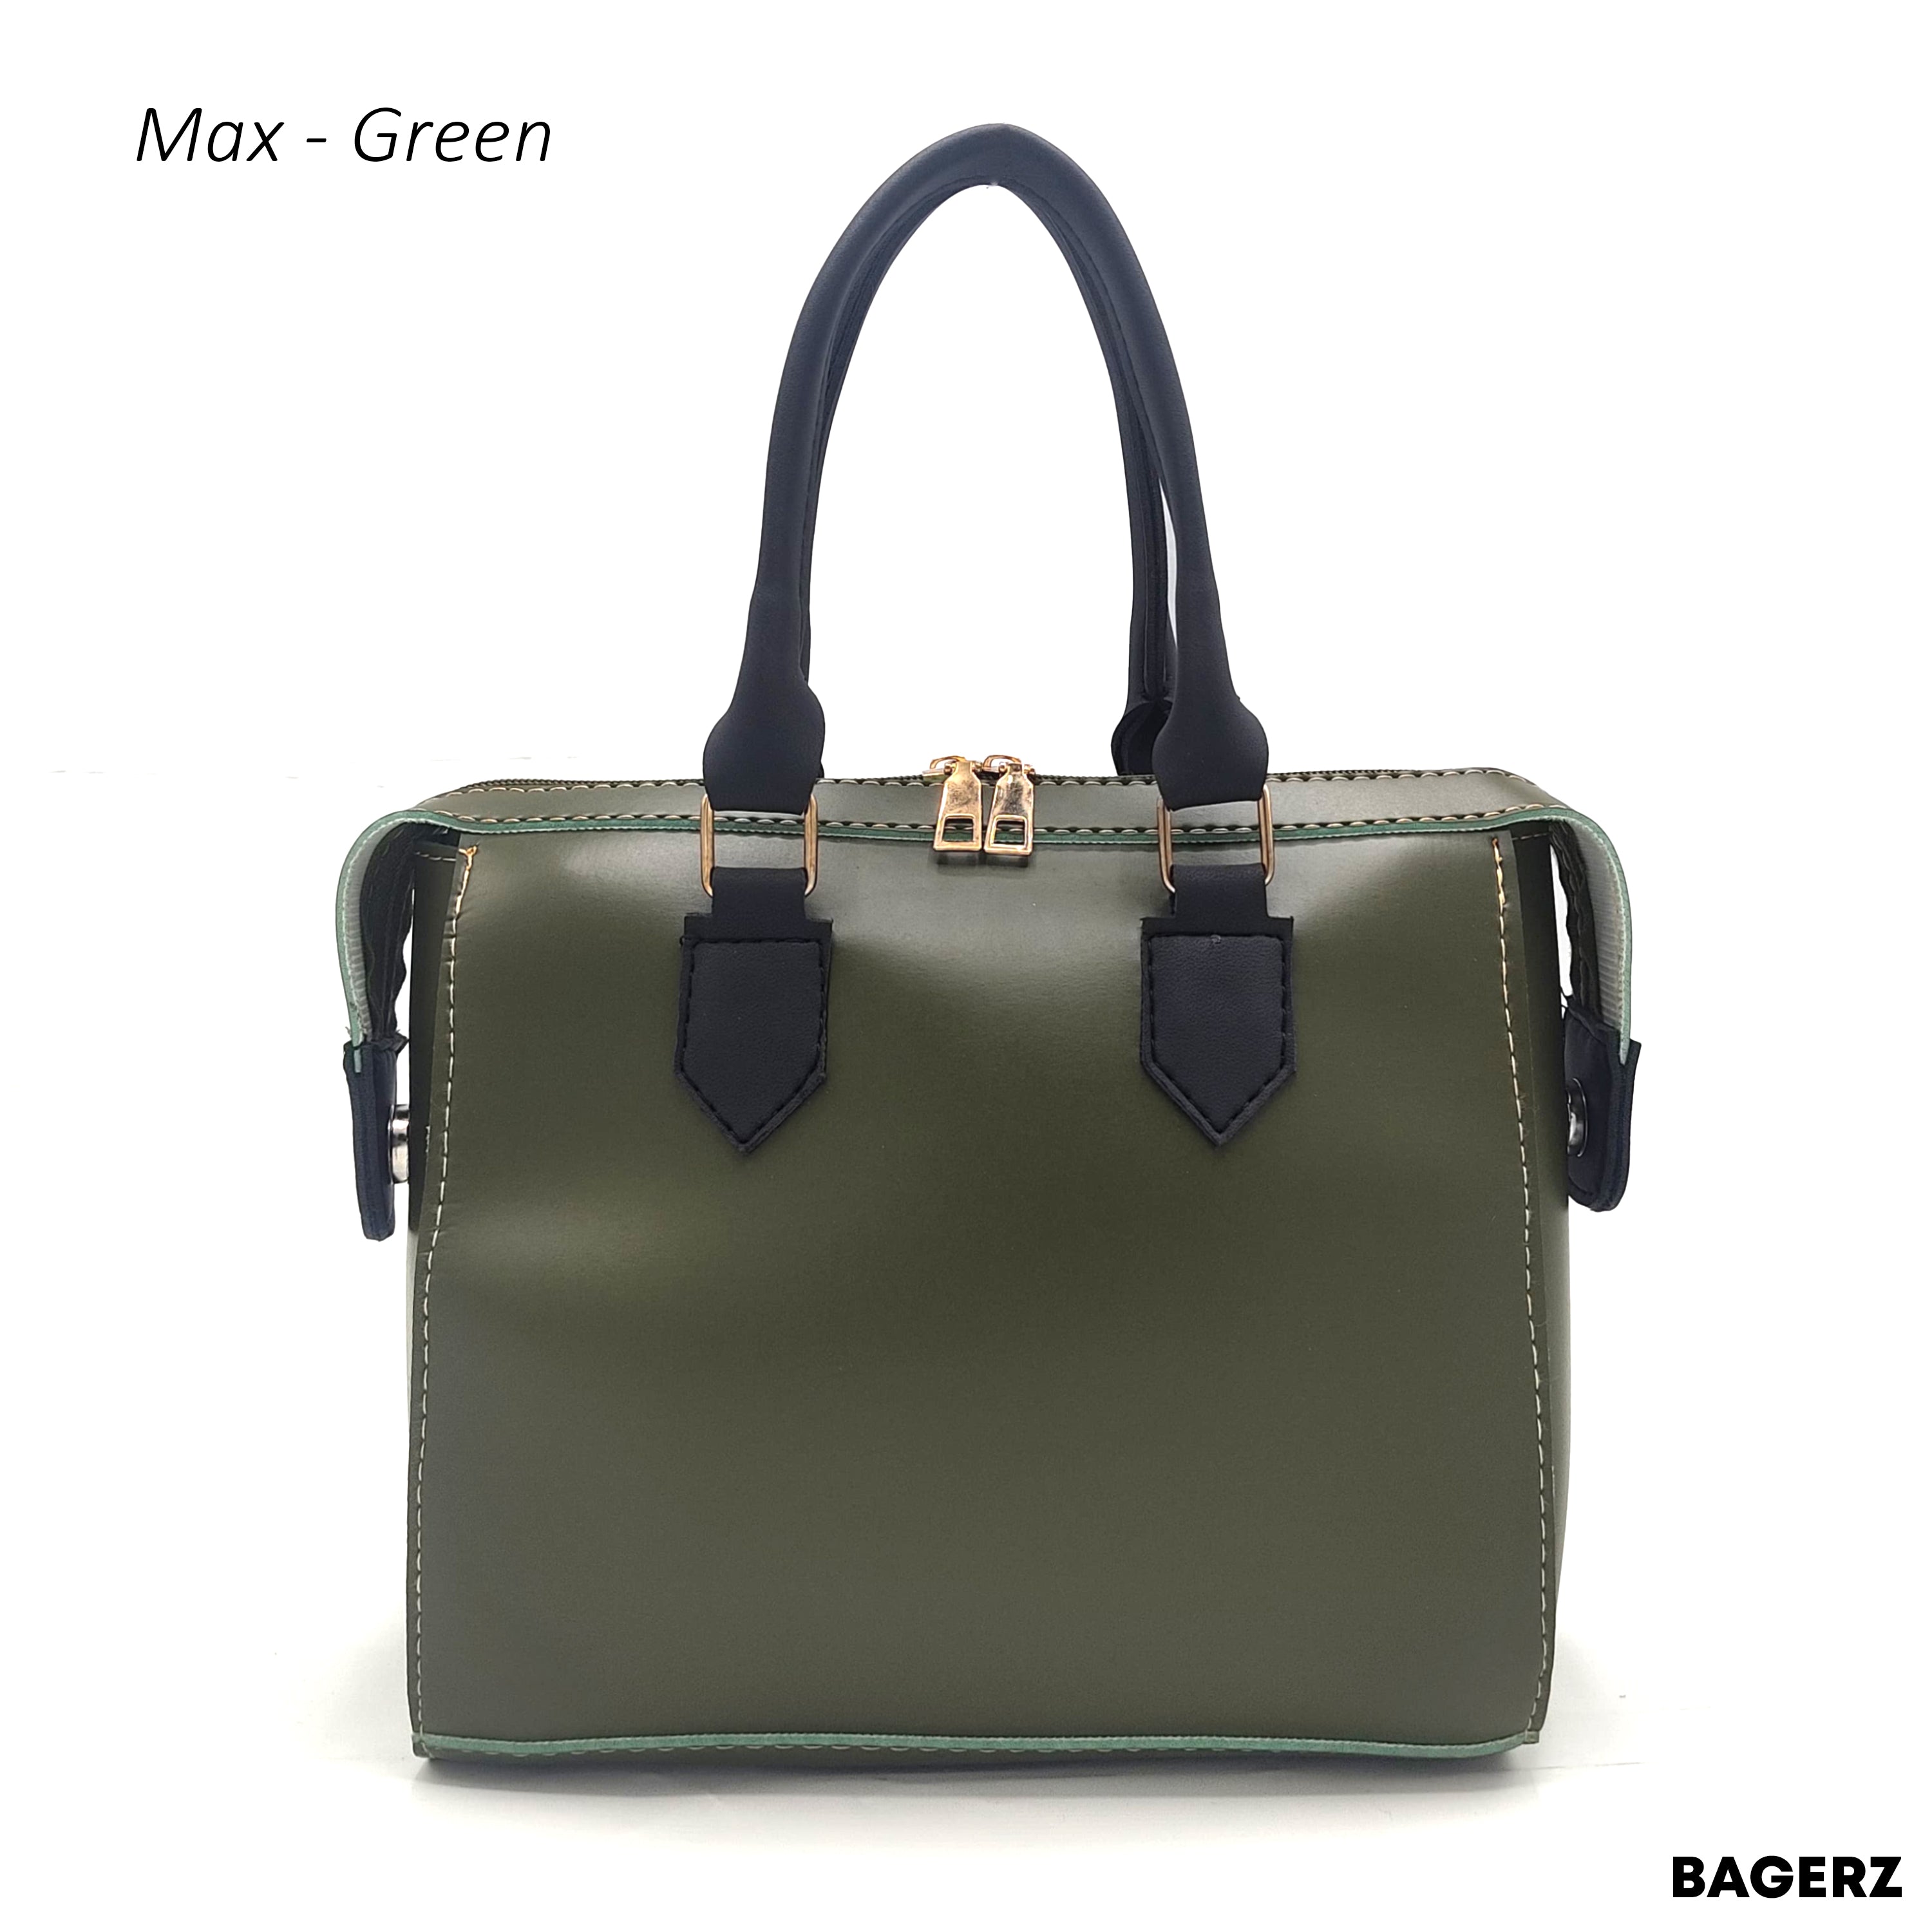 Max - Green